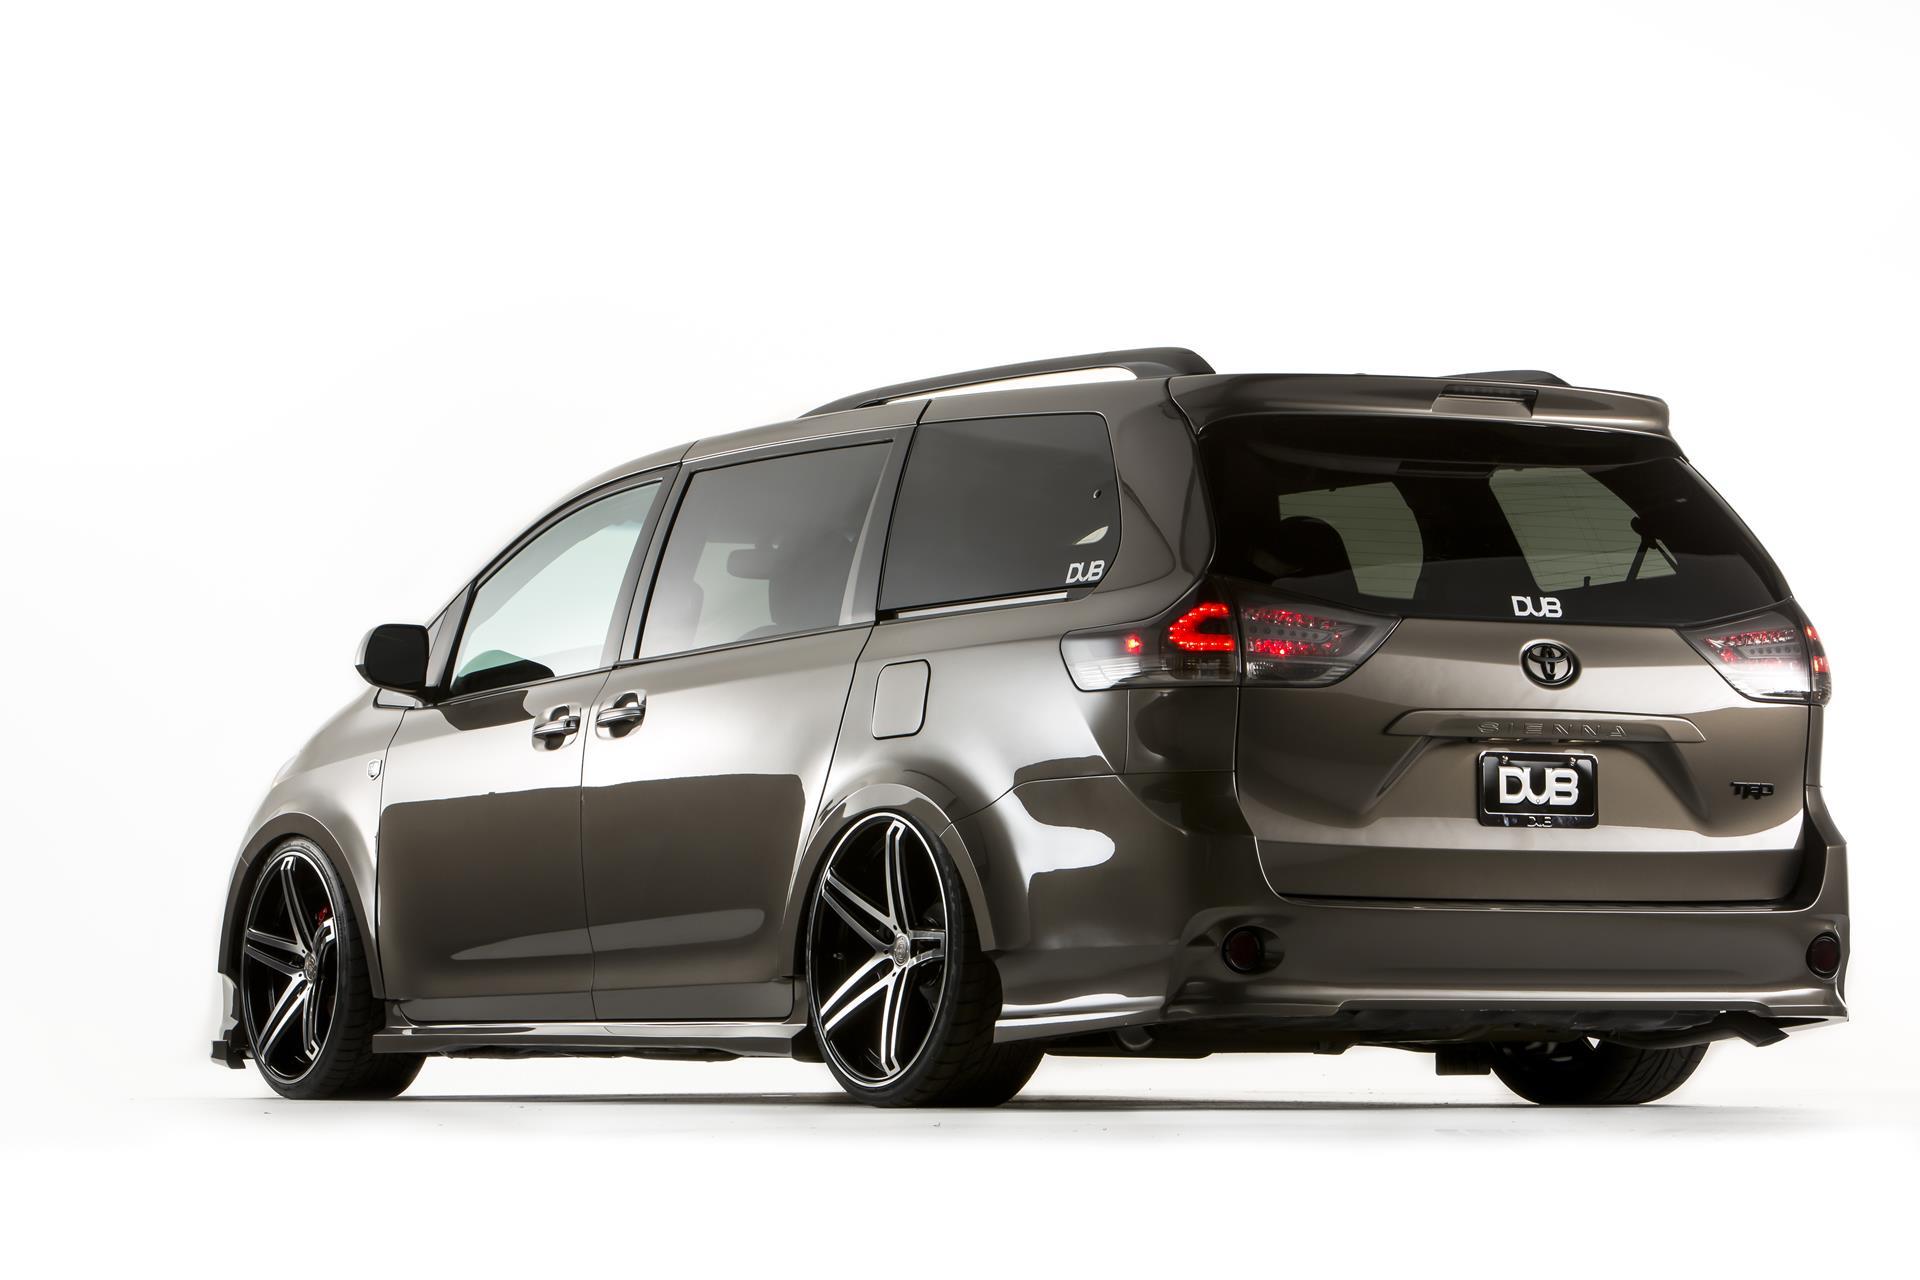 2014 Toyota Sienna DUB Edition